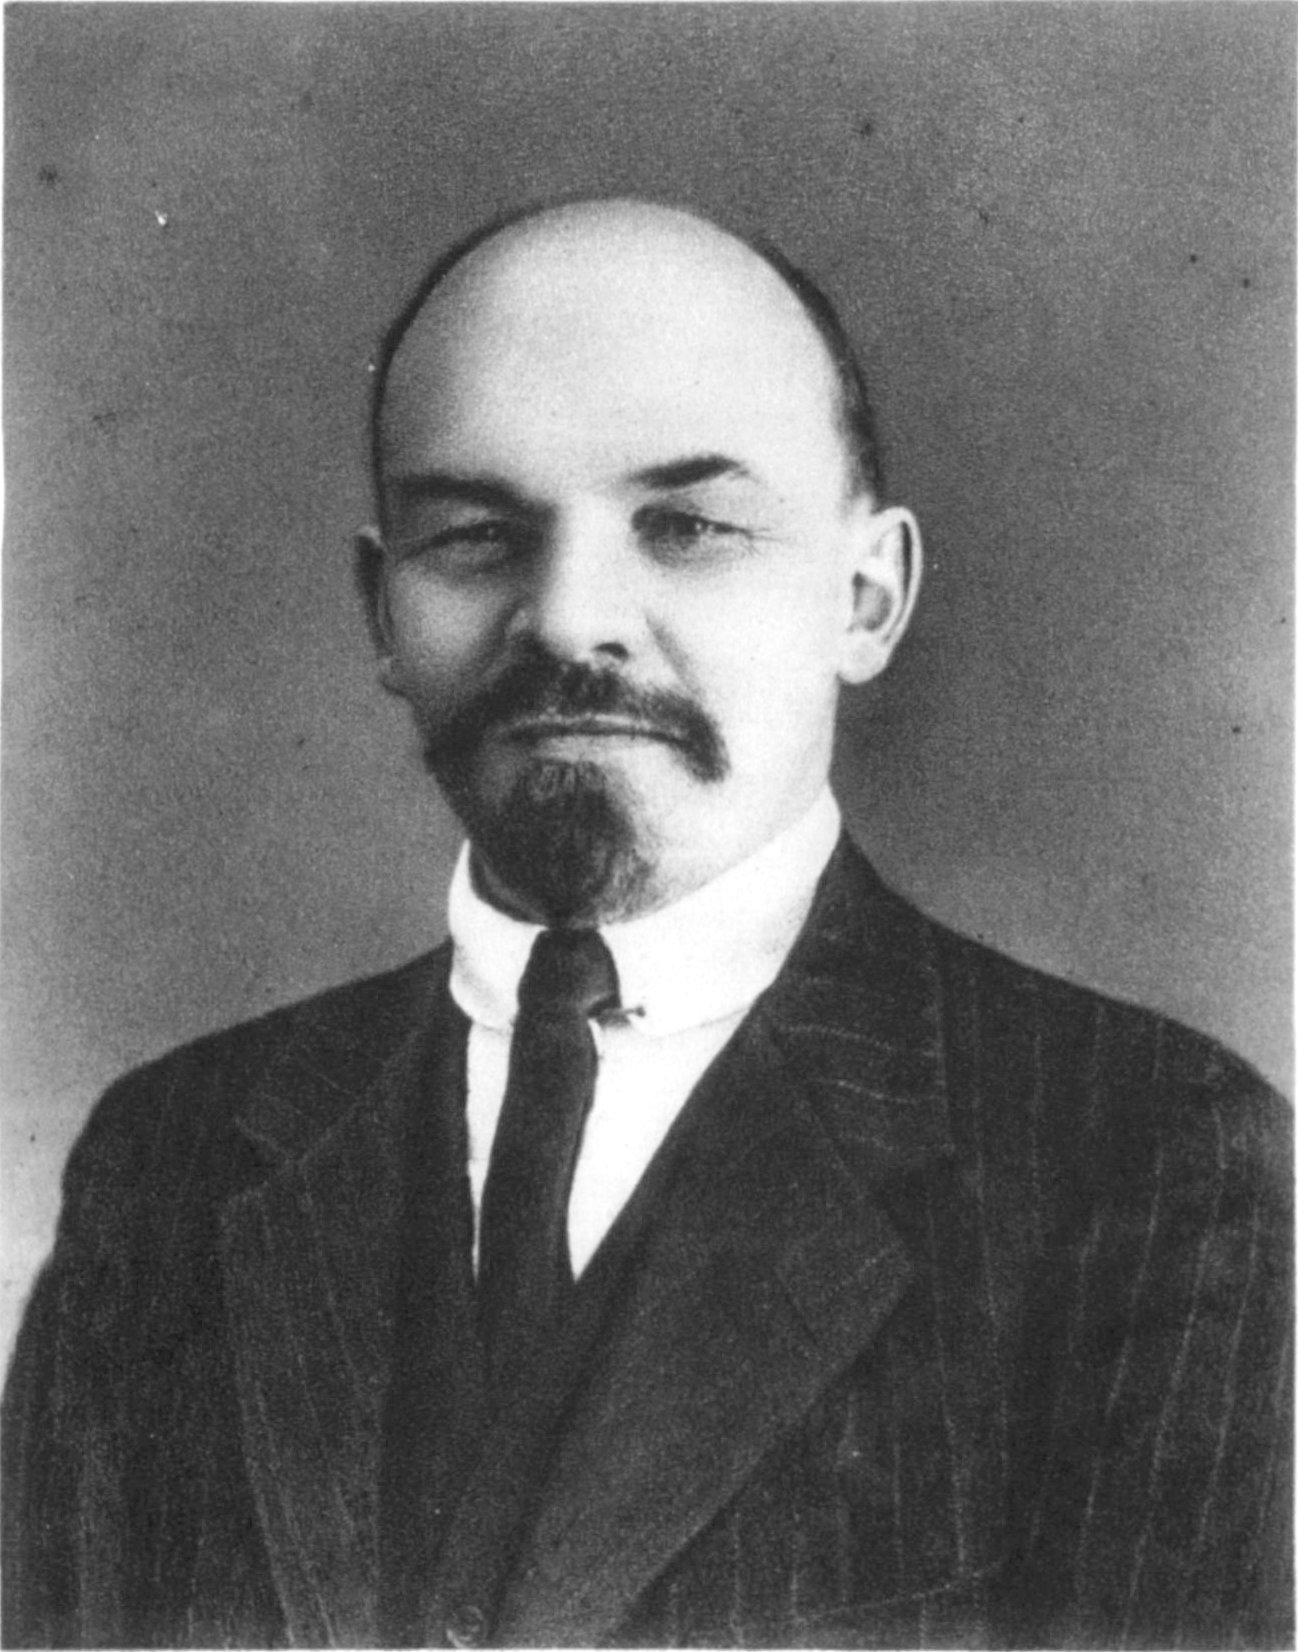 Rewolucyjne wrzenie w Rosji zaskoczyło Lenina, przebywającego właśnie w Szwajcarii. Zdjęcie wykonane przez Wilhelma Pliera w 1916 roku w Zurychu.